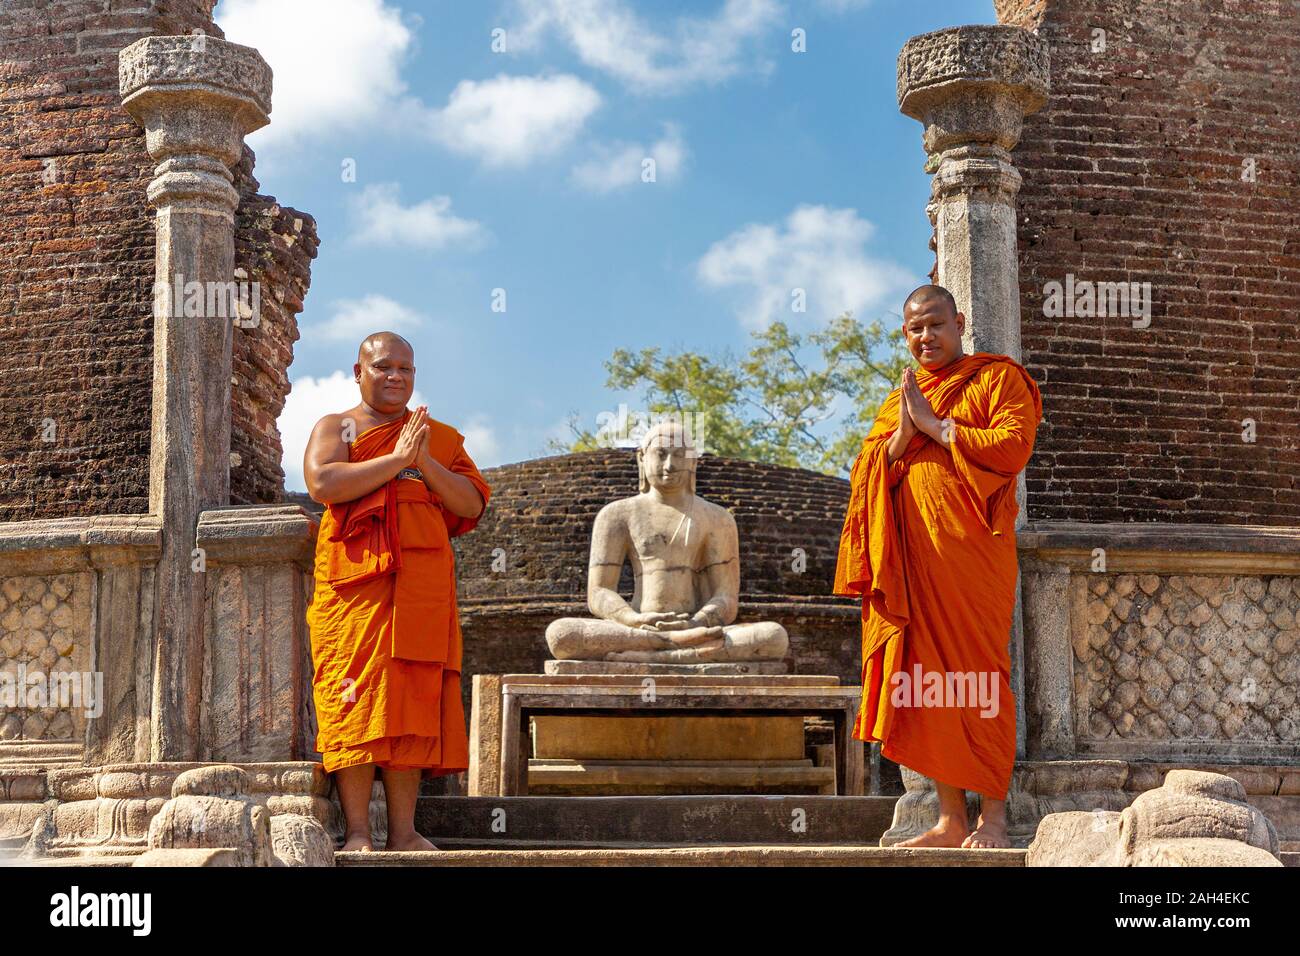 Les moines bouddhistes dans le reste de la ville ancienne de Polonnaruwa, Polonnaruwa, Sri Lanka Banque D'Images